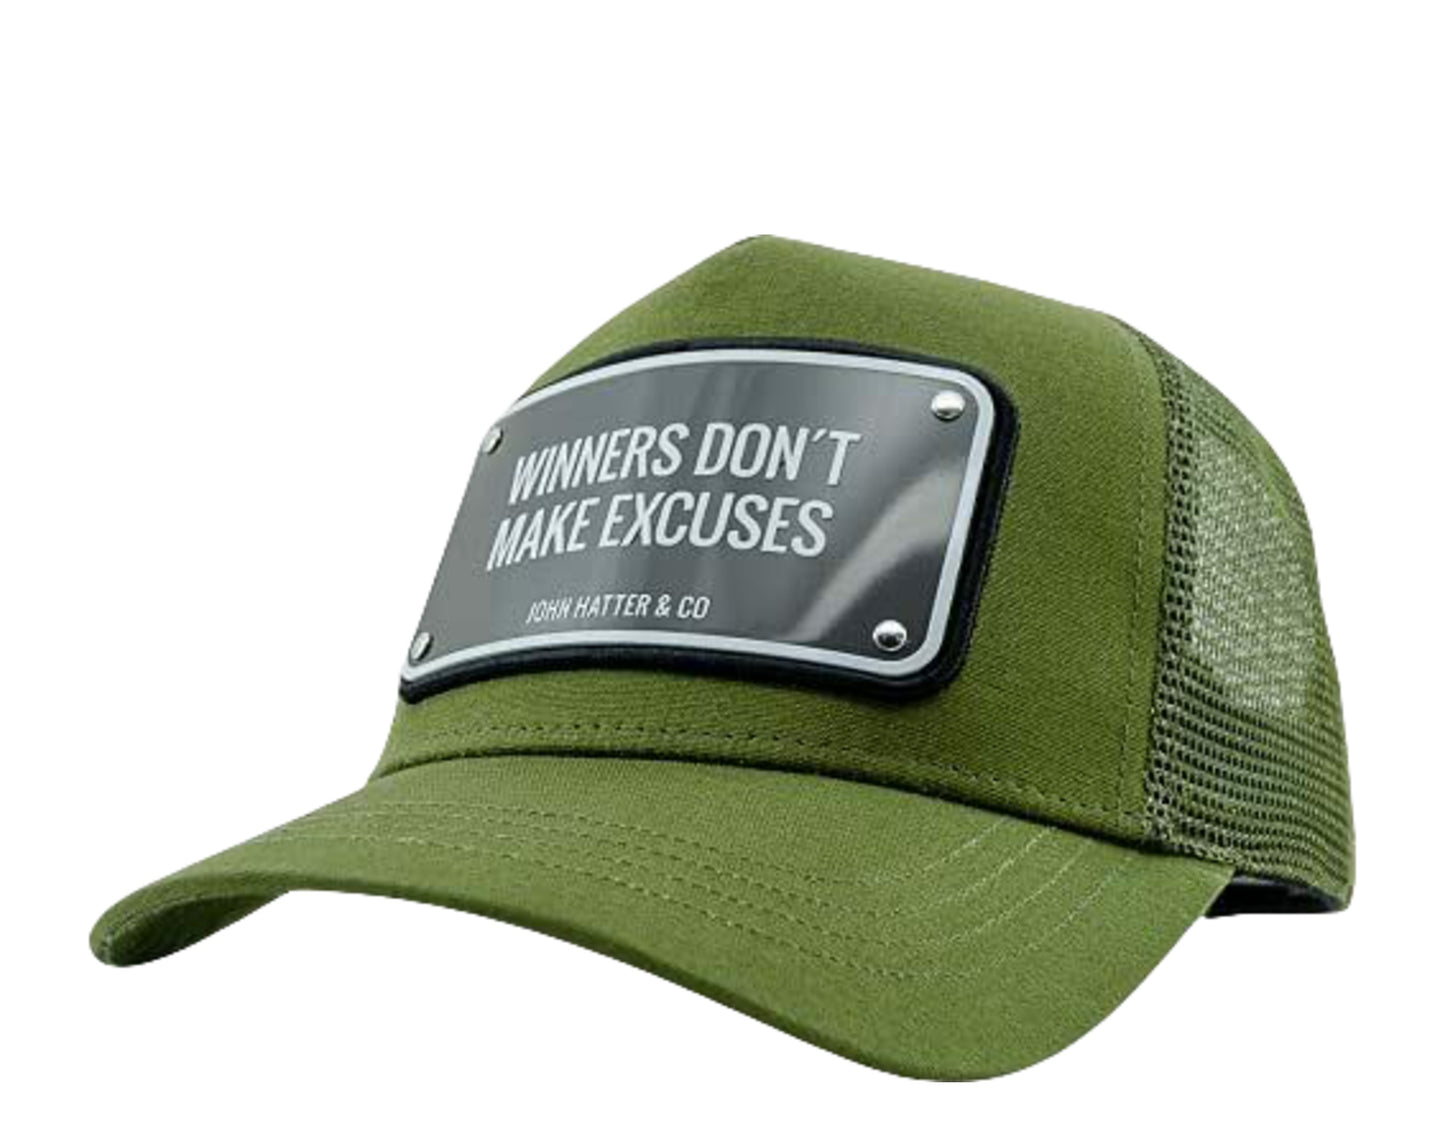 John Hatter & Co Winners Don't Make Excuses Trucker Hat